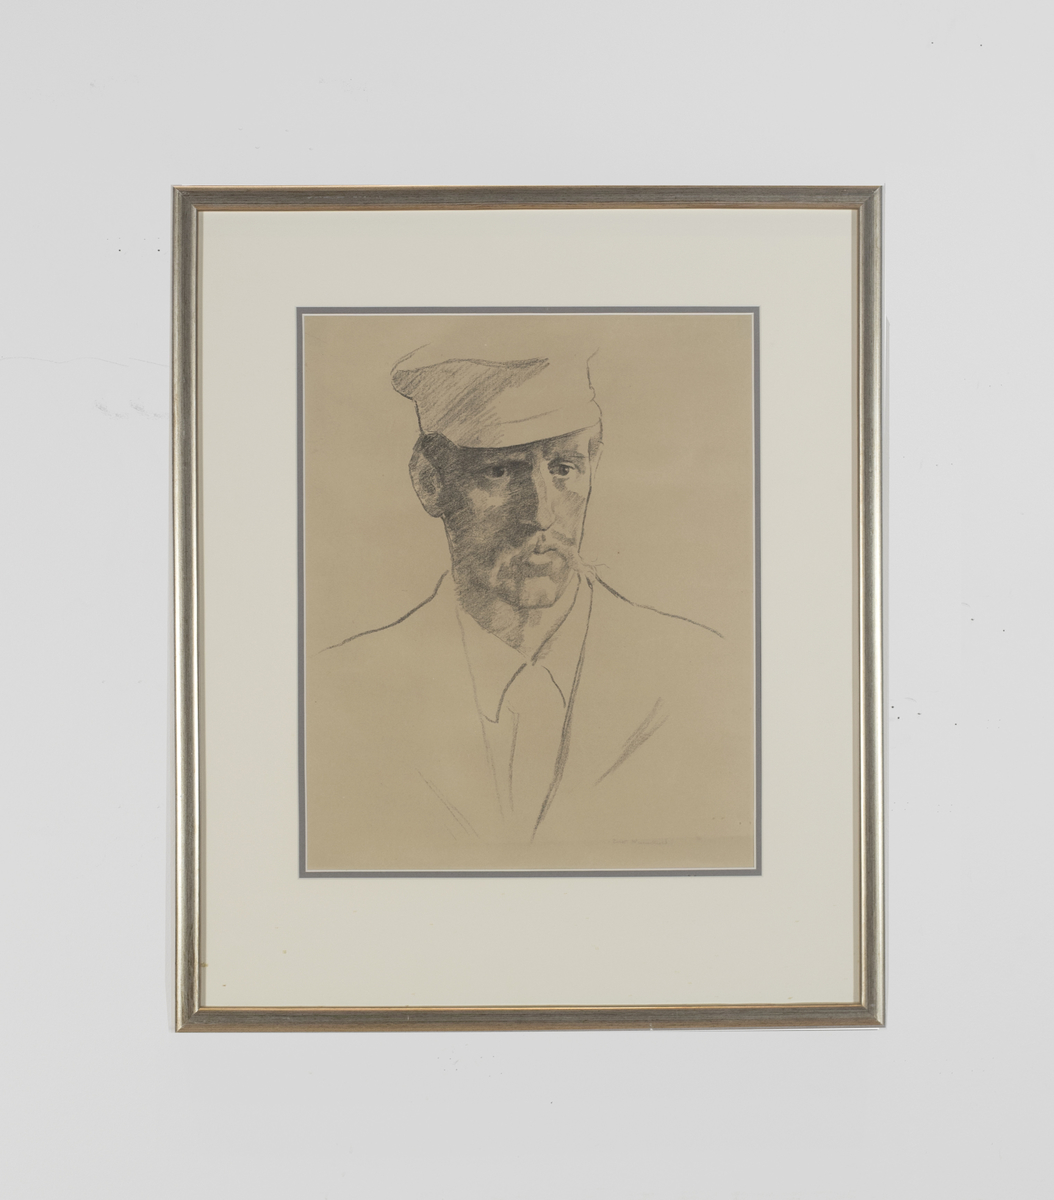 Polfarer Fridtjof Nansen portrettert med hatt på hodet og skjorte med jakke over. Ansiktet er mer detaljert utformet enn bekledningen. 